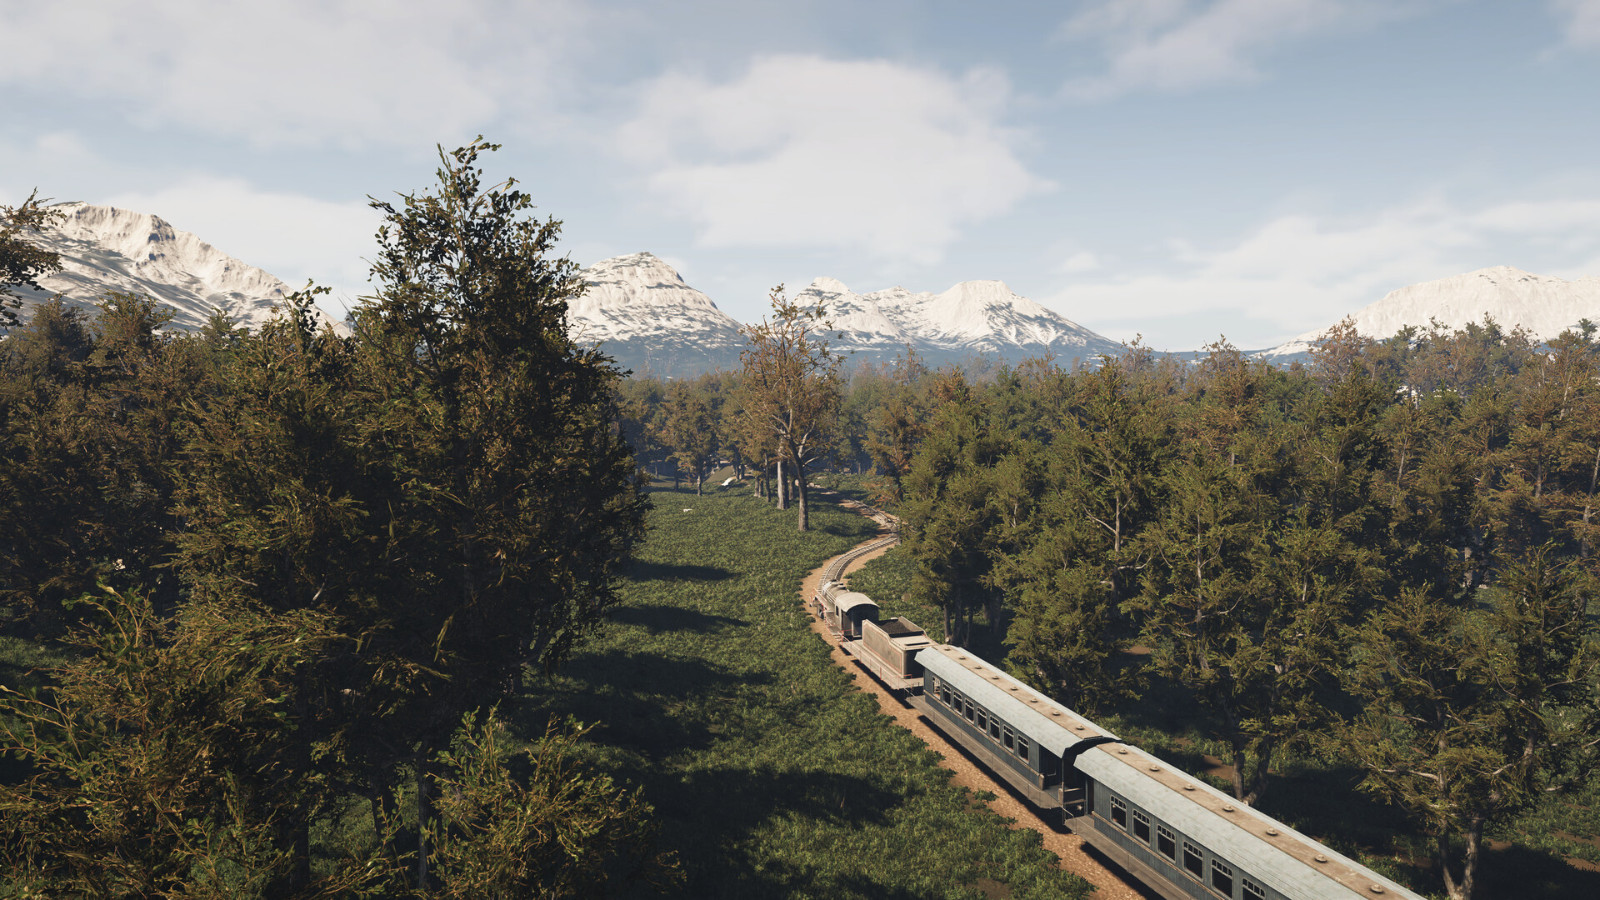 《Train Simulator火车模拟器》Steam页面上线